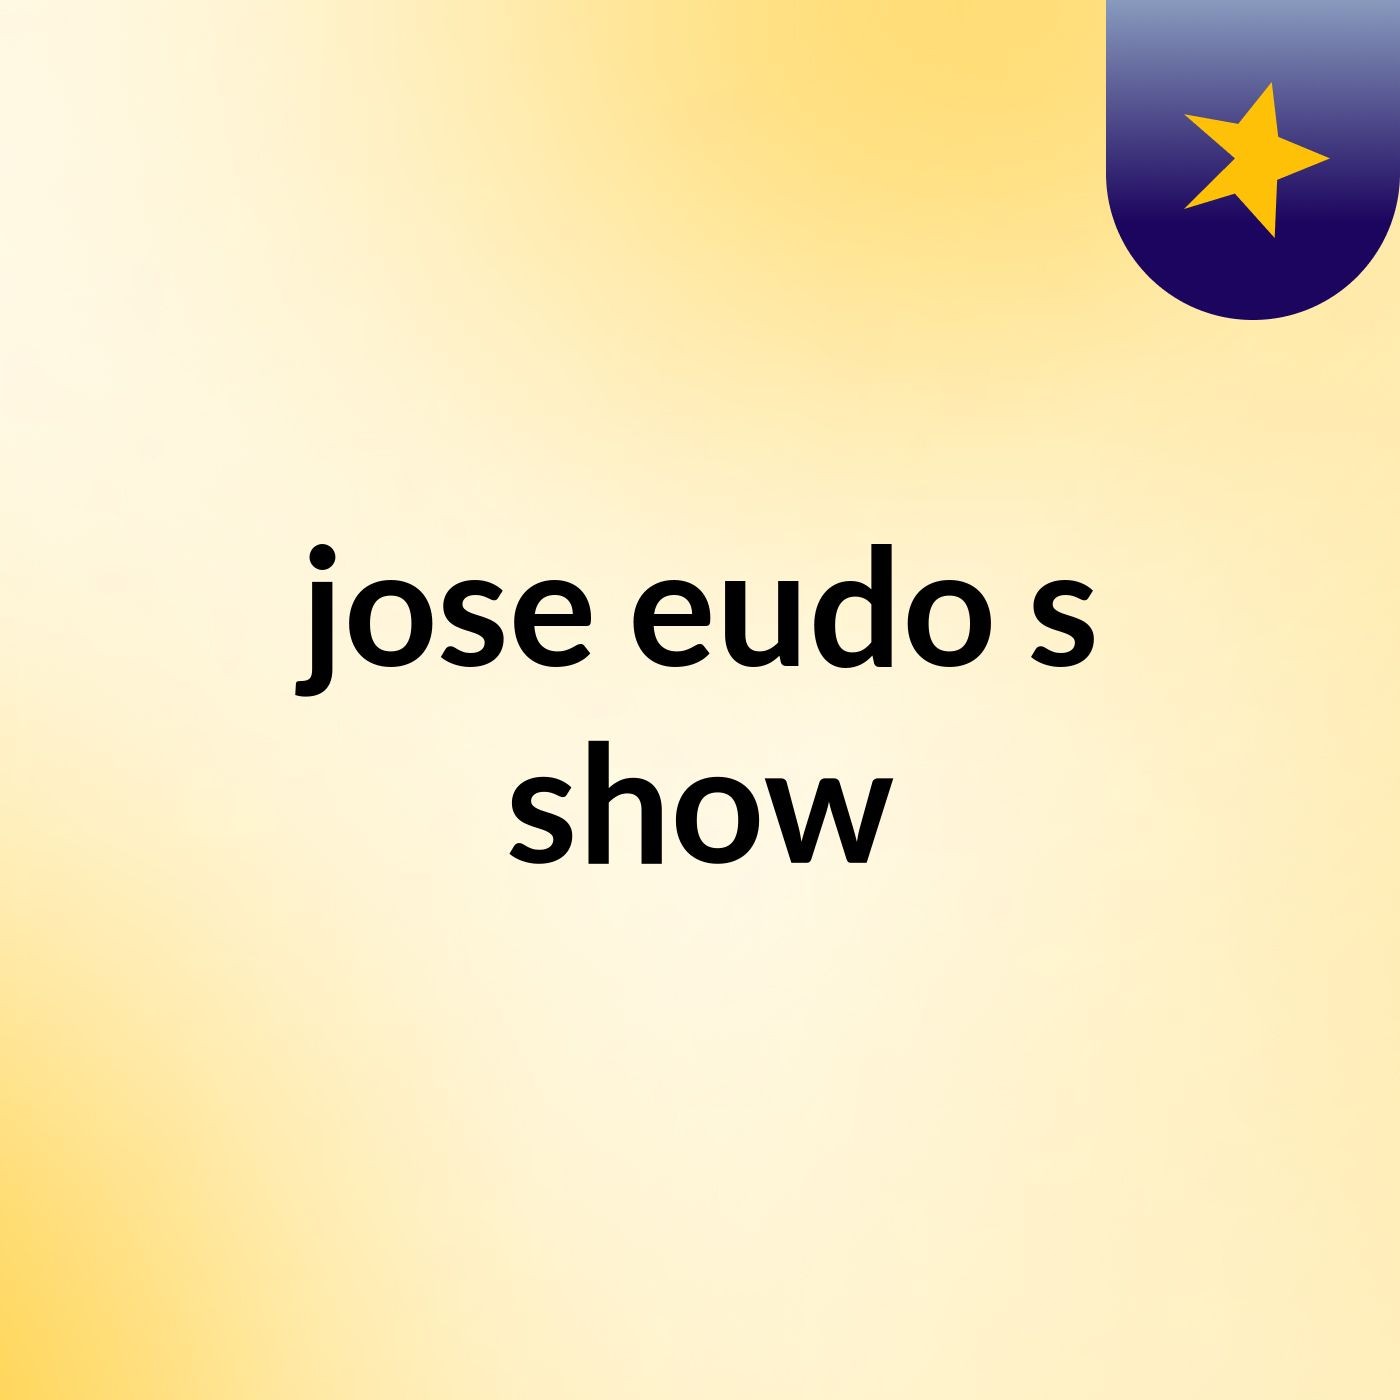 jose eudo's show